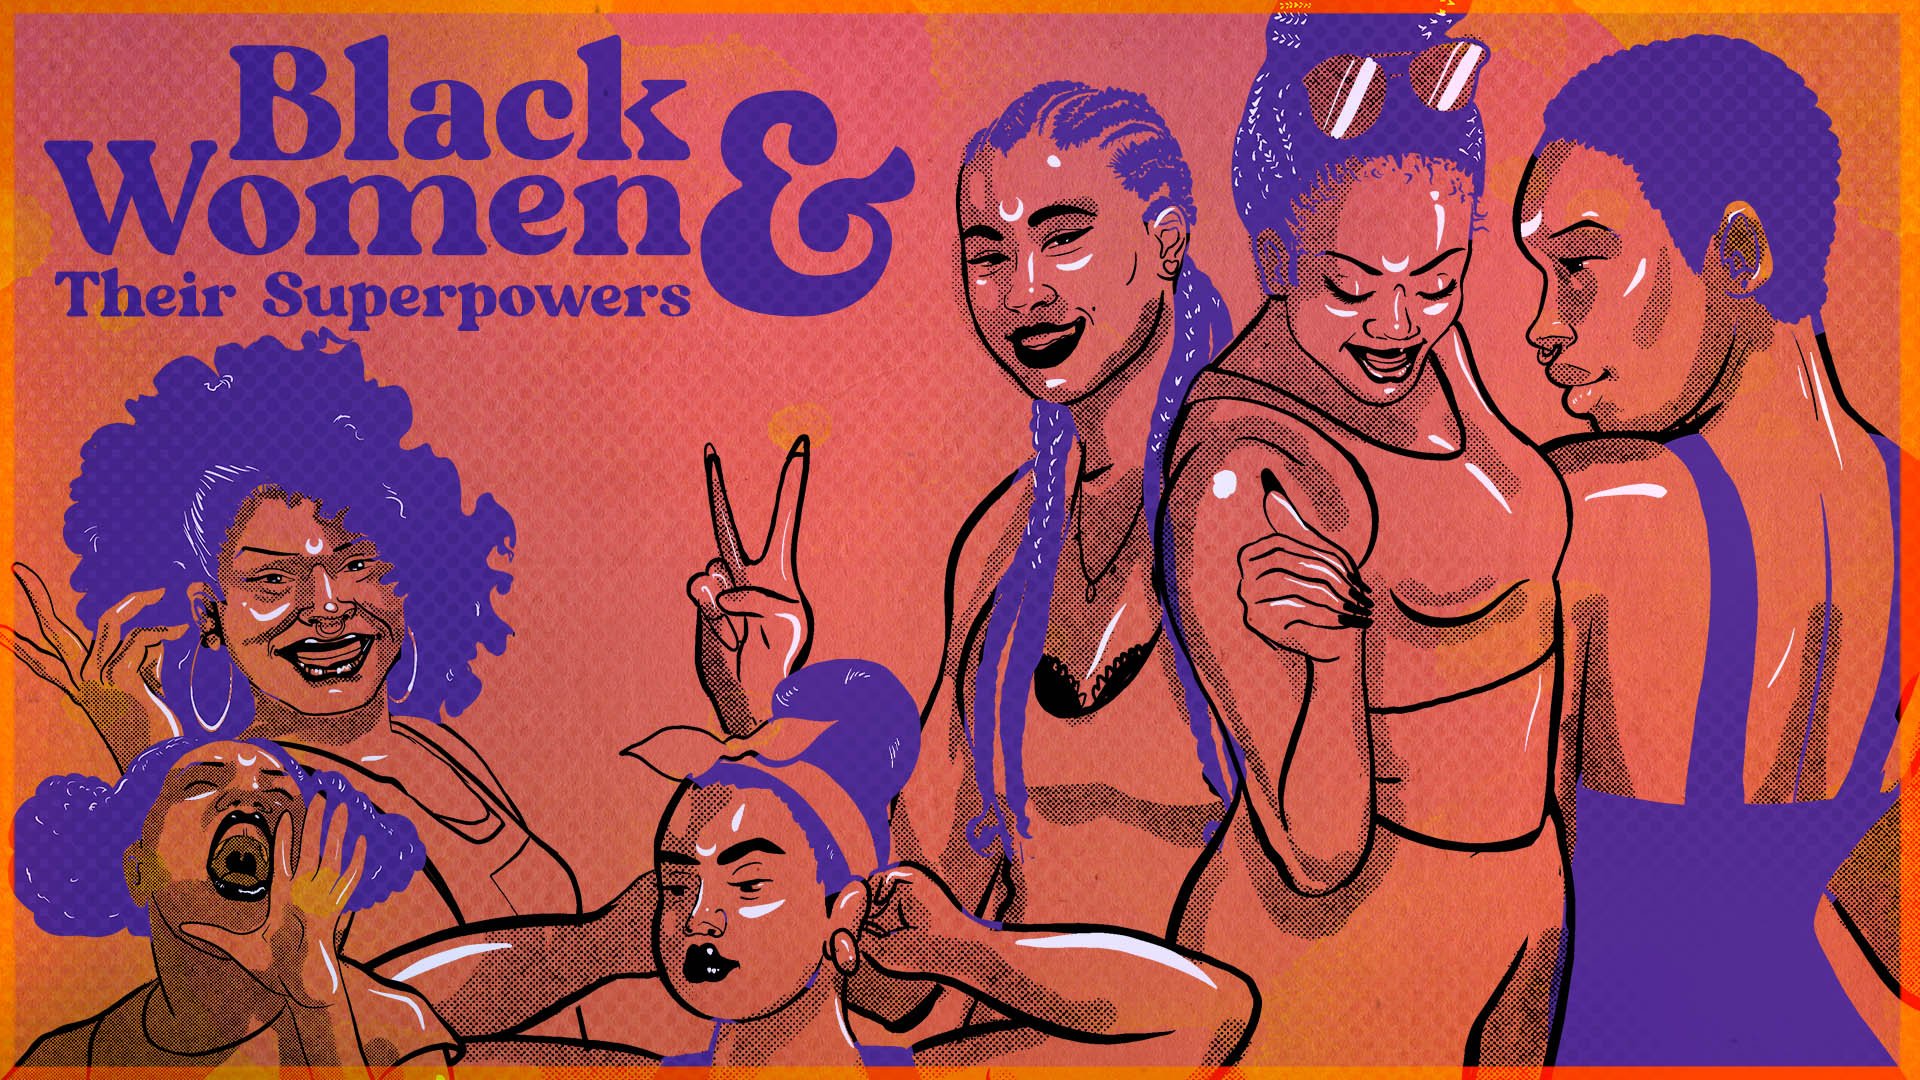 7 Black Women Share Their Divine Superpowers